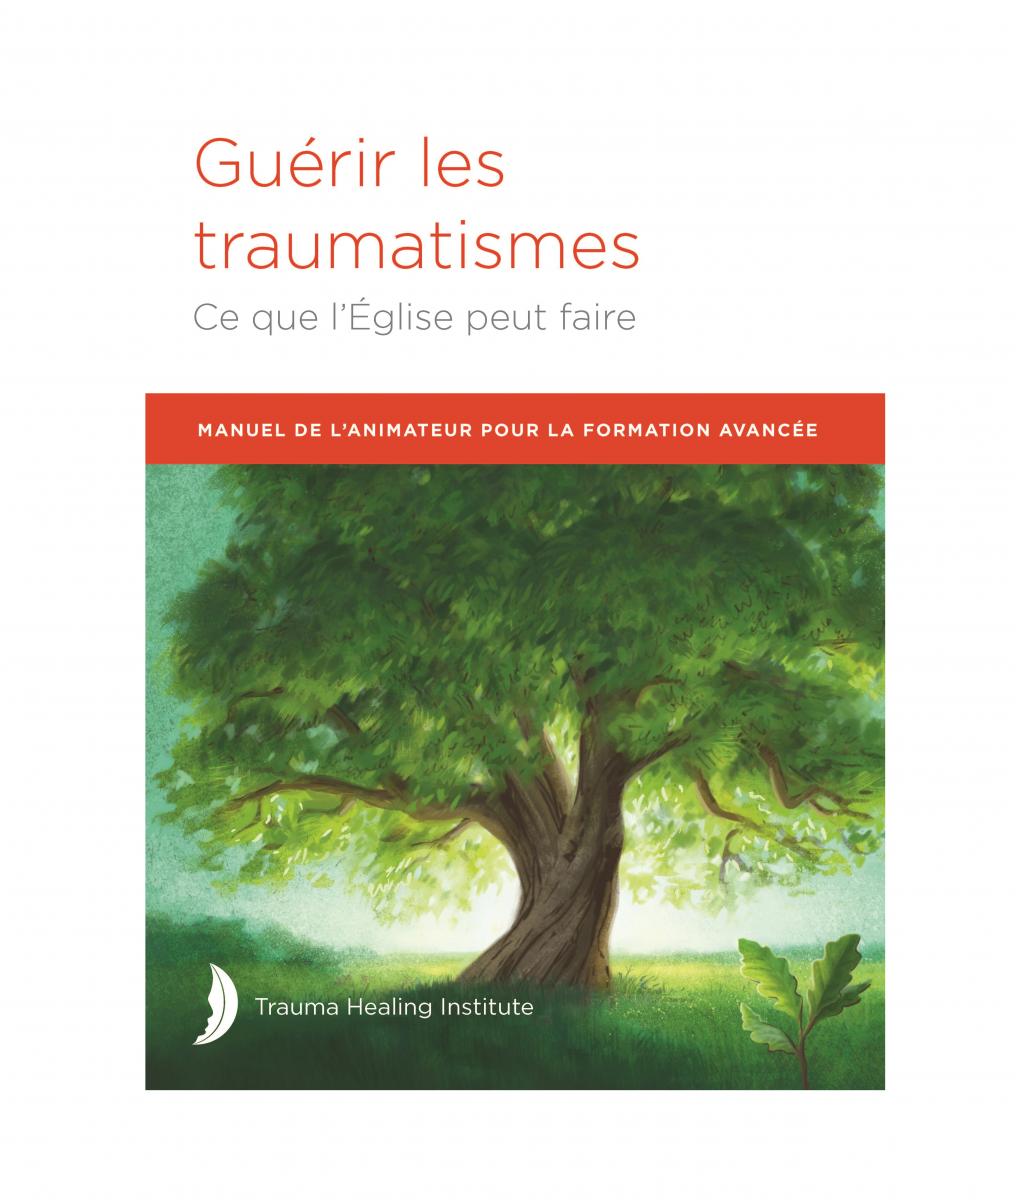 Guérir les traumatismes: Manuel de L’animateur pour la Formation Avancée 2021 edition - Print on Demand